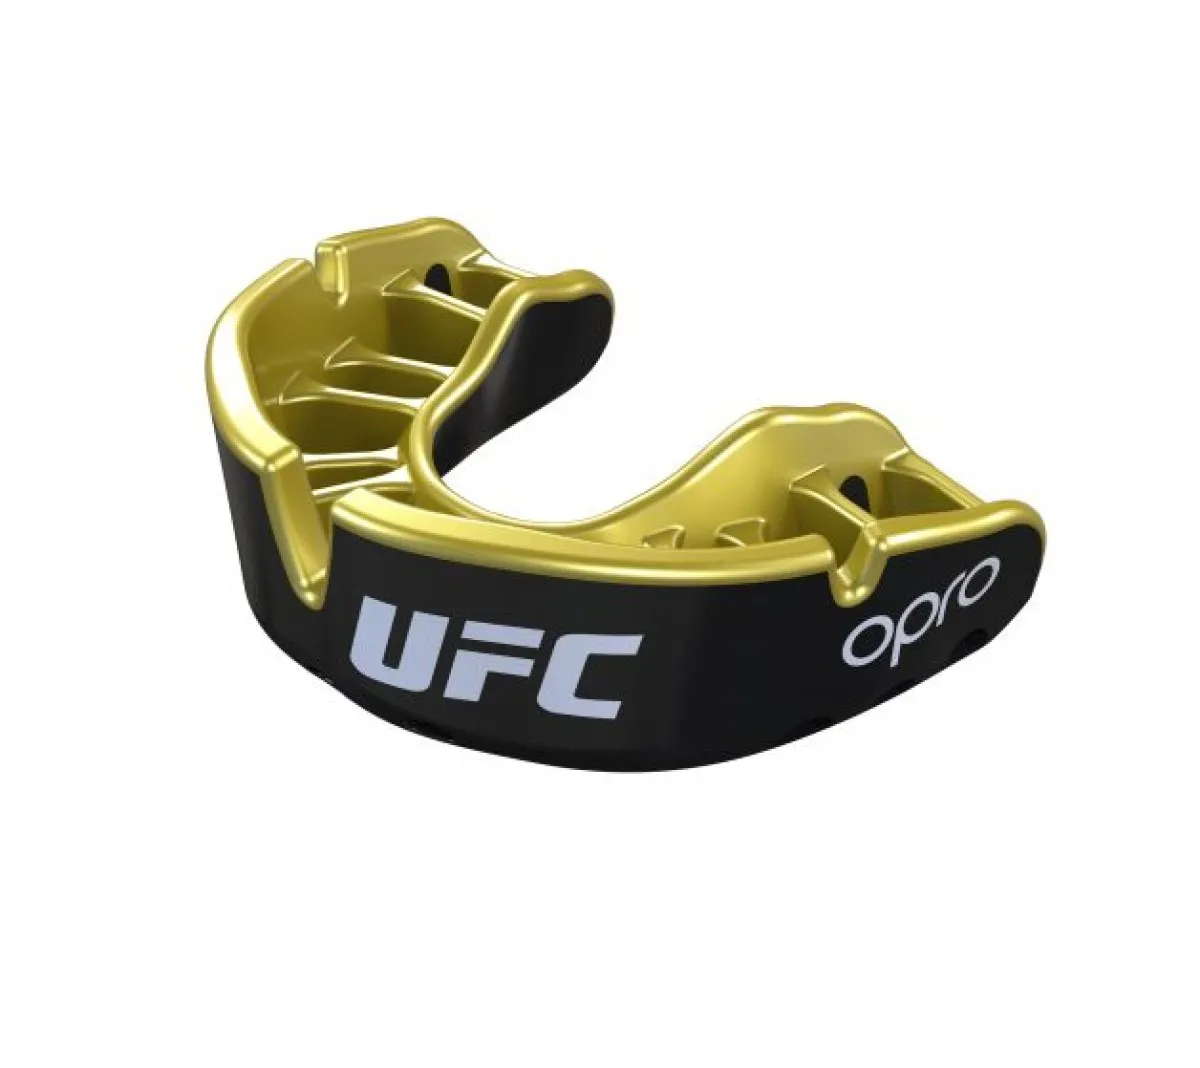 OPRO Protège-dents UFC Silver - rouge/noir, SeniorOPRO Protège-dents UFC Gold - rouge/argent, SeniorOPRO Protège-dents UFC Gold - noir/or, Senior